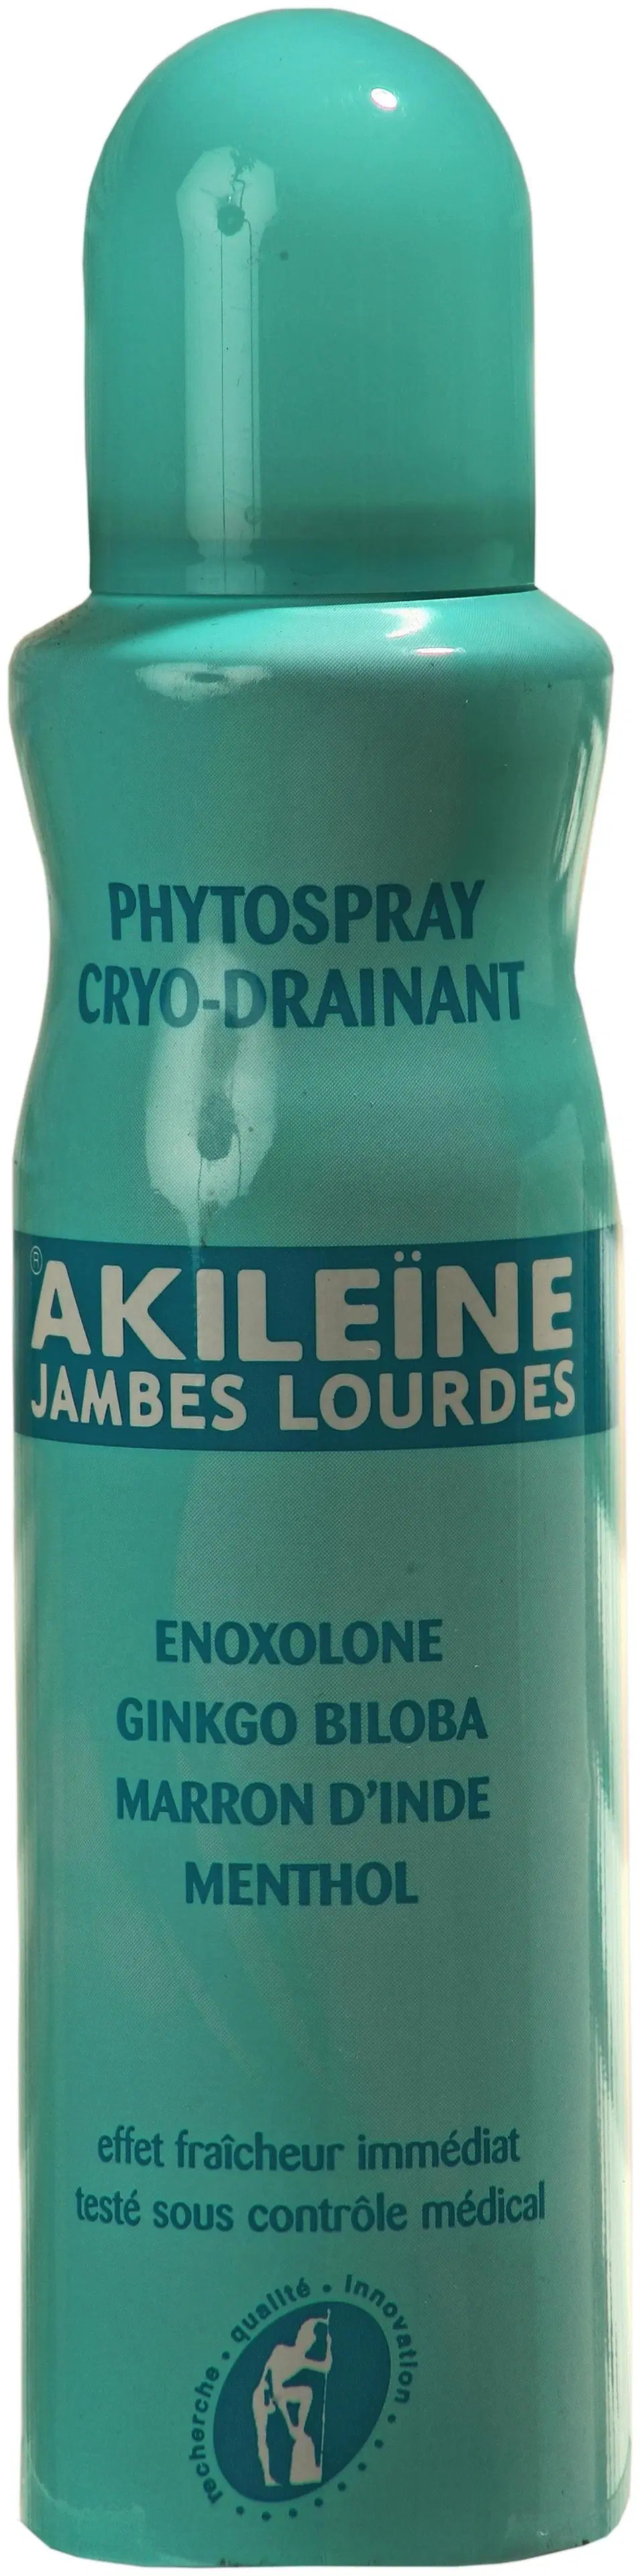 Akileine Phyto Spray kylmähoito jalkasuihke 150 ml